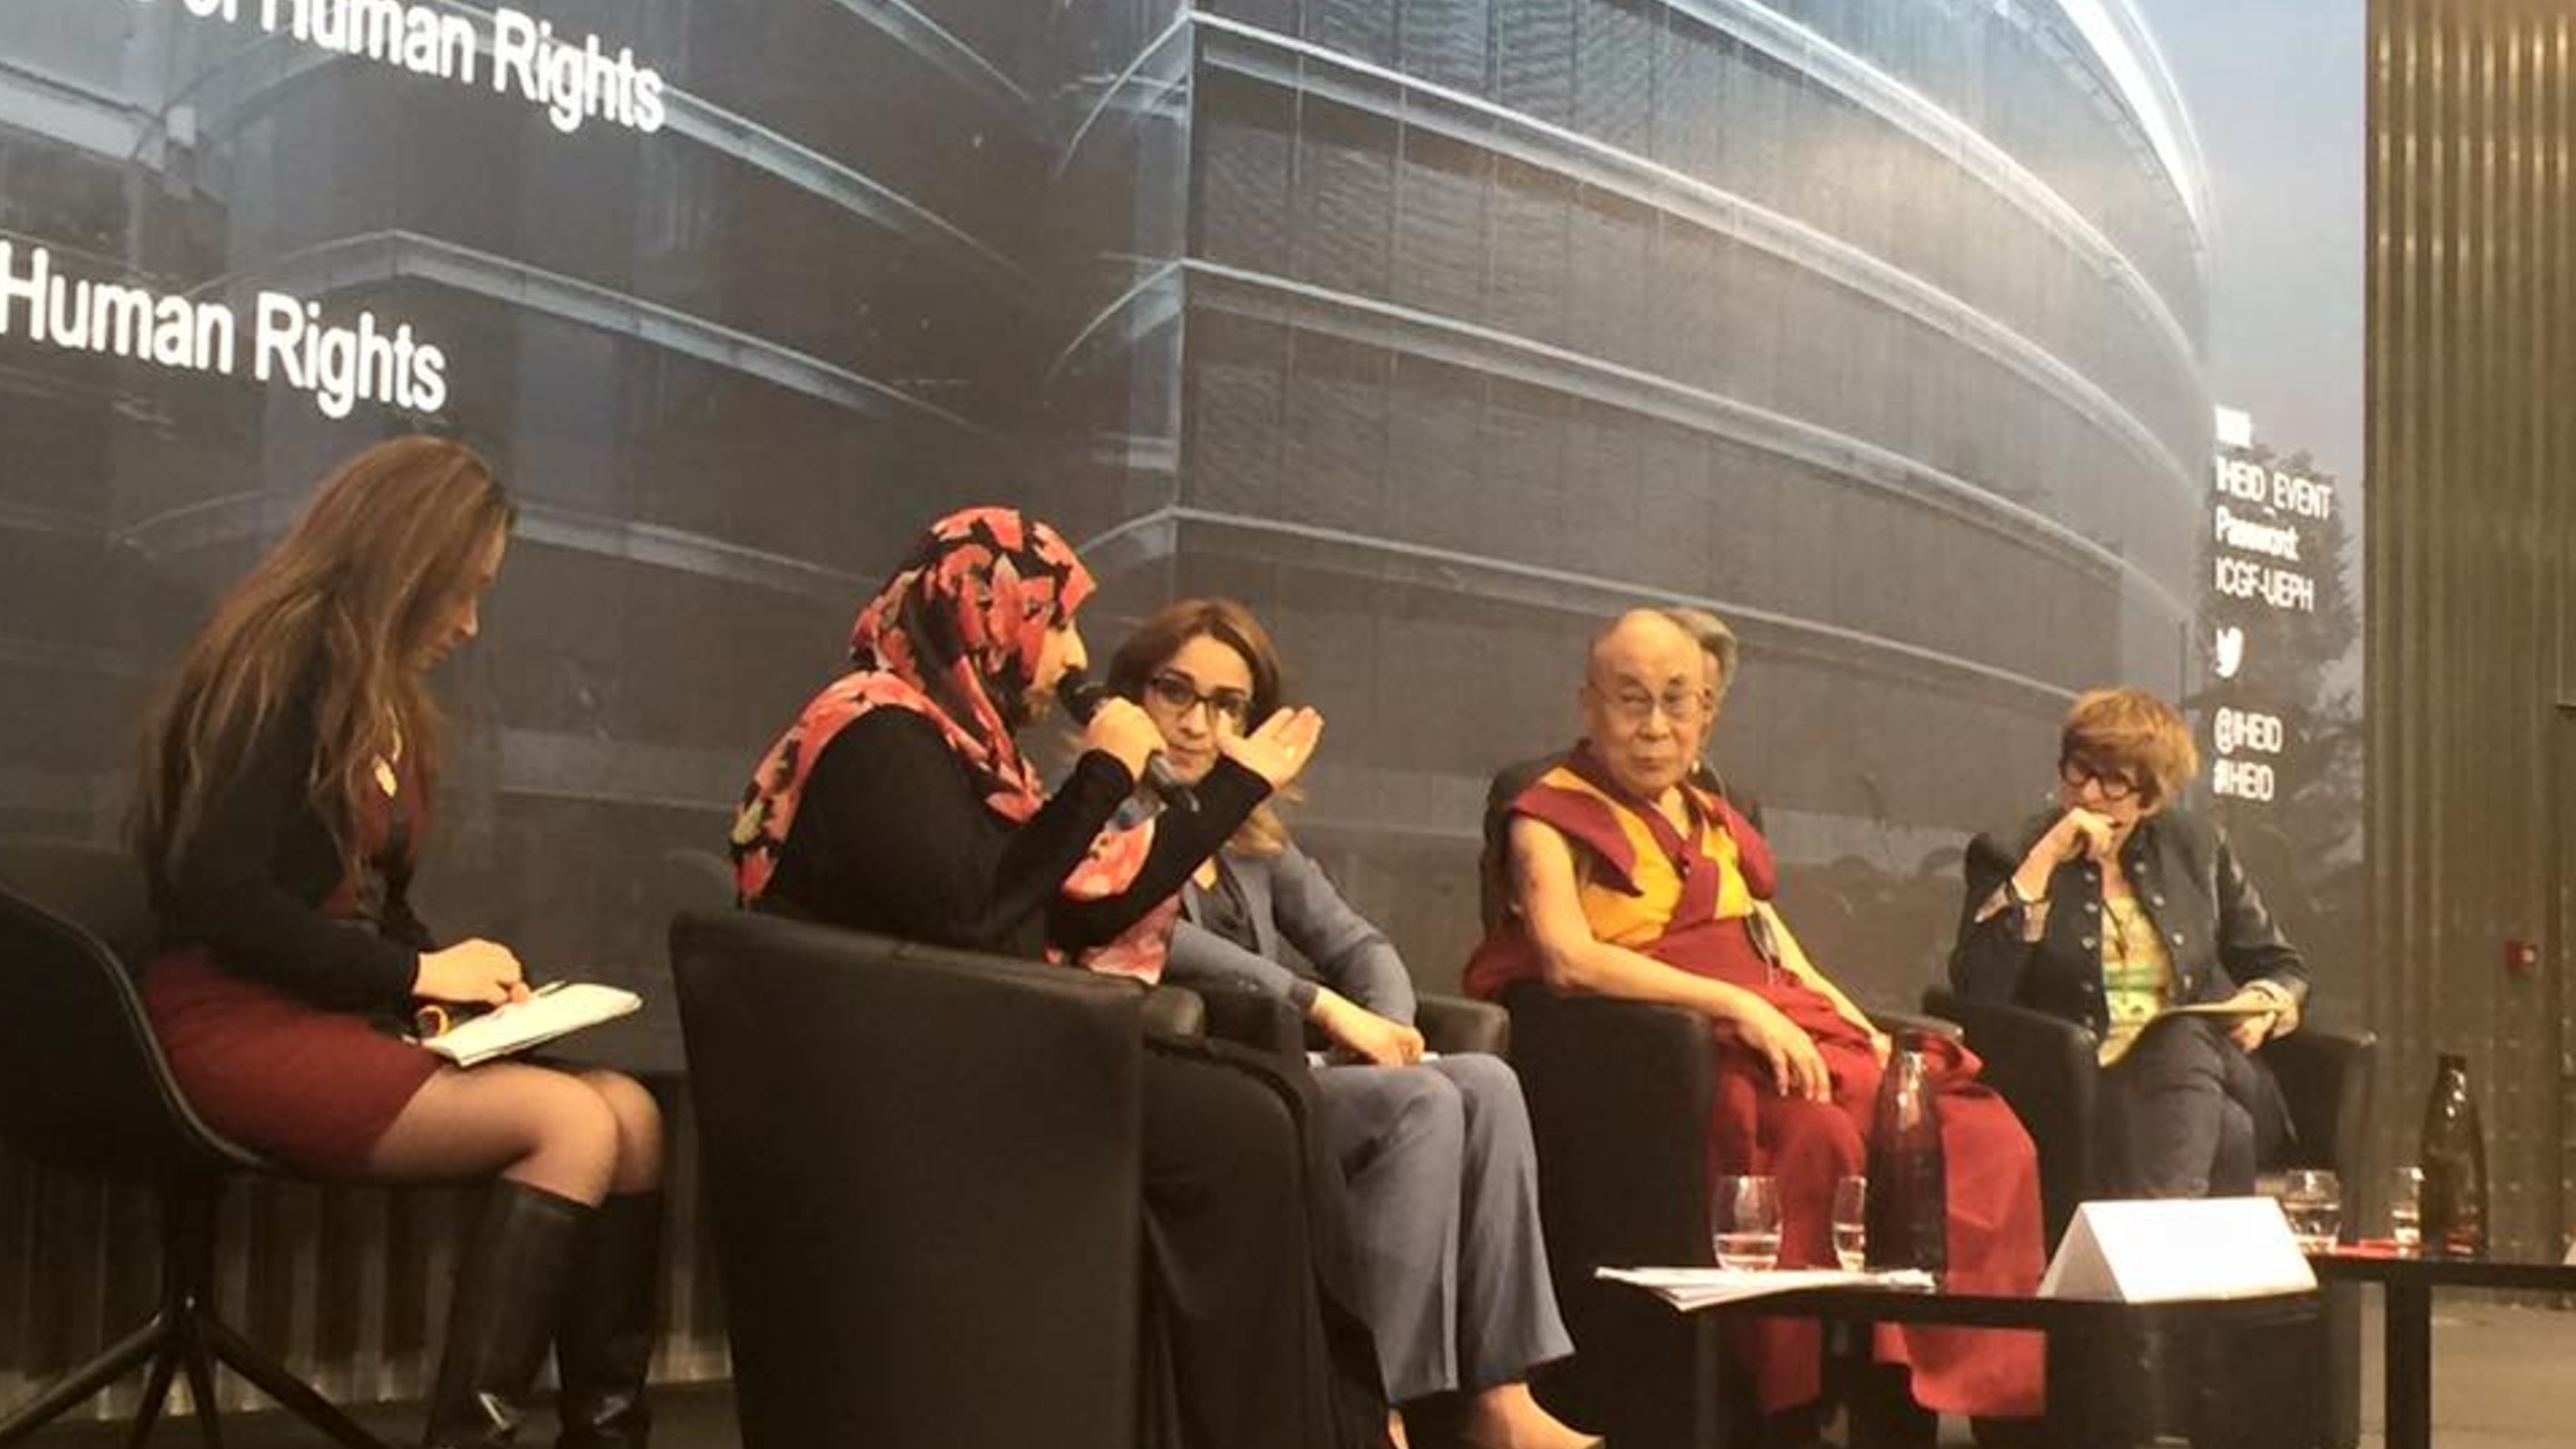 كلمة الناشطة الحائزة على جائزة نوبل للسلام توكل كرمان أمام ندوة في المعهد العالي للدراسات الدولية والتنمية في جنيف على هامش الدورة الـ31 لمجلس حقوق الانسان التابع للأمم المتحدة